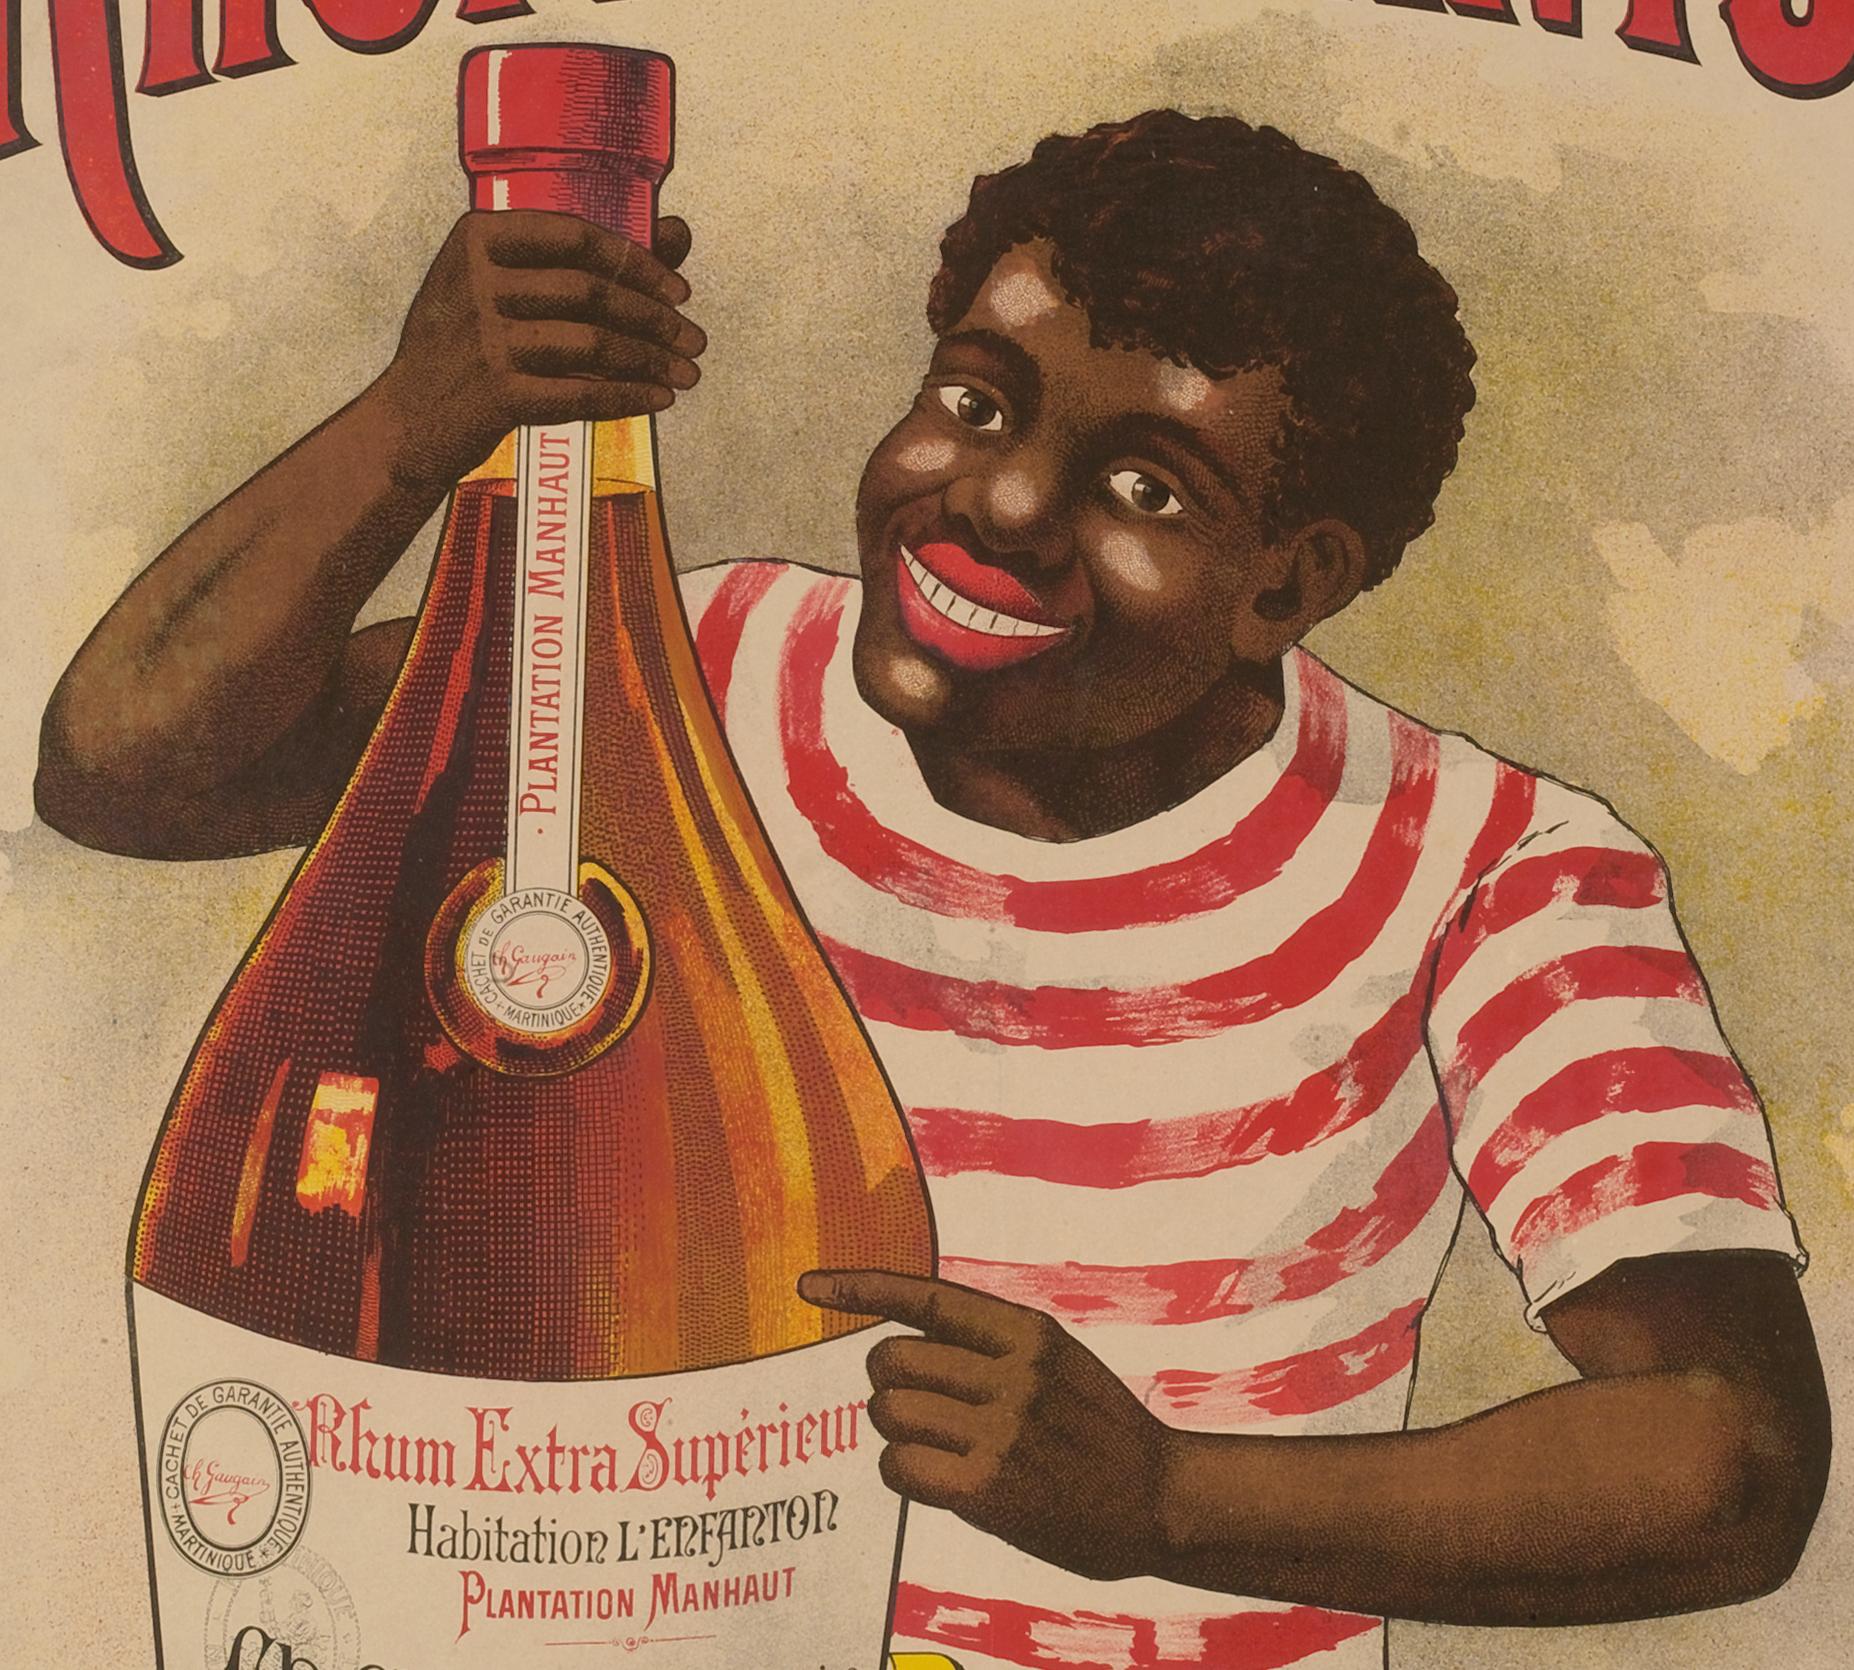 Original Vintage Poster-Rhum de Martinique-Antilles, 1900

L'affiche représente un jeune noir (africain ou caribéen) tenant une bouteille de rhum dans ses mains.

Détails supplémentaires :

Matériaux et techniques : Lithographie en couleurs sur